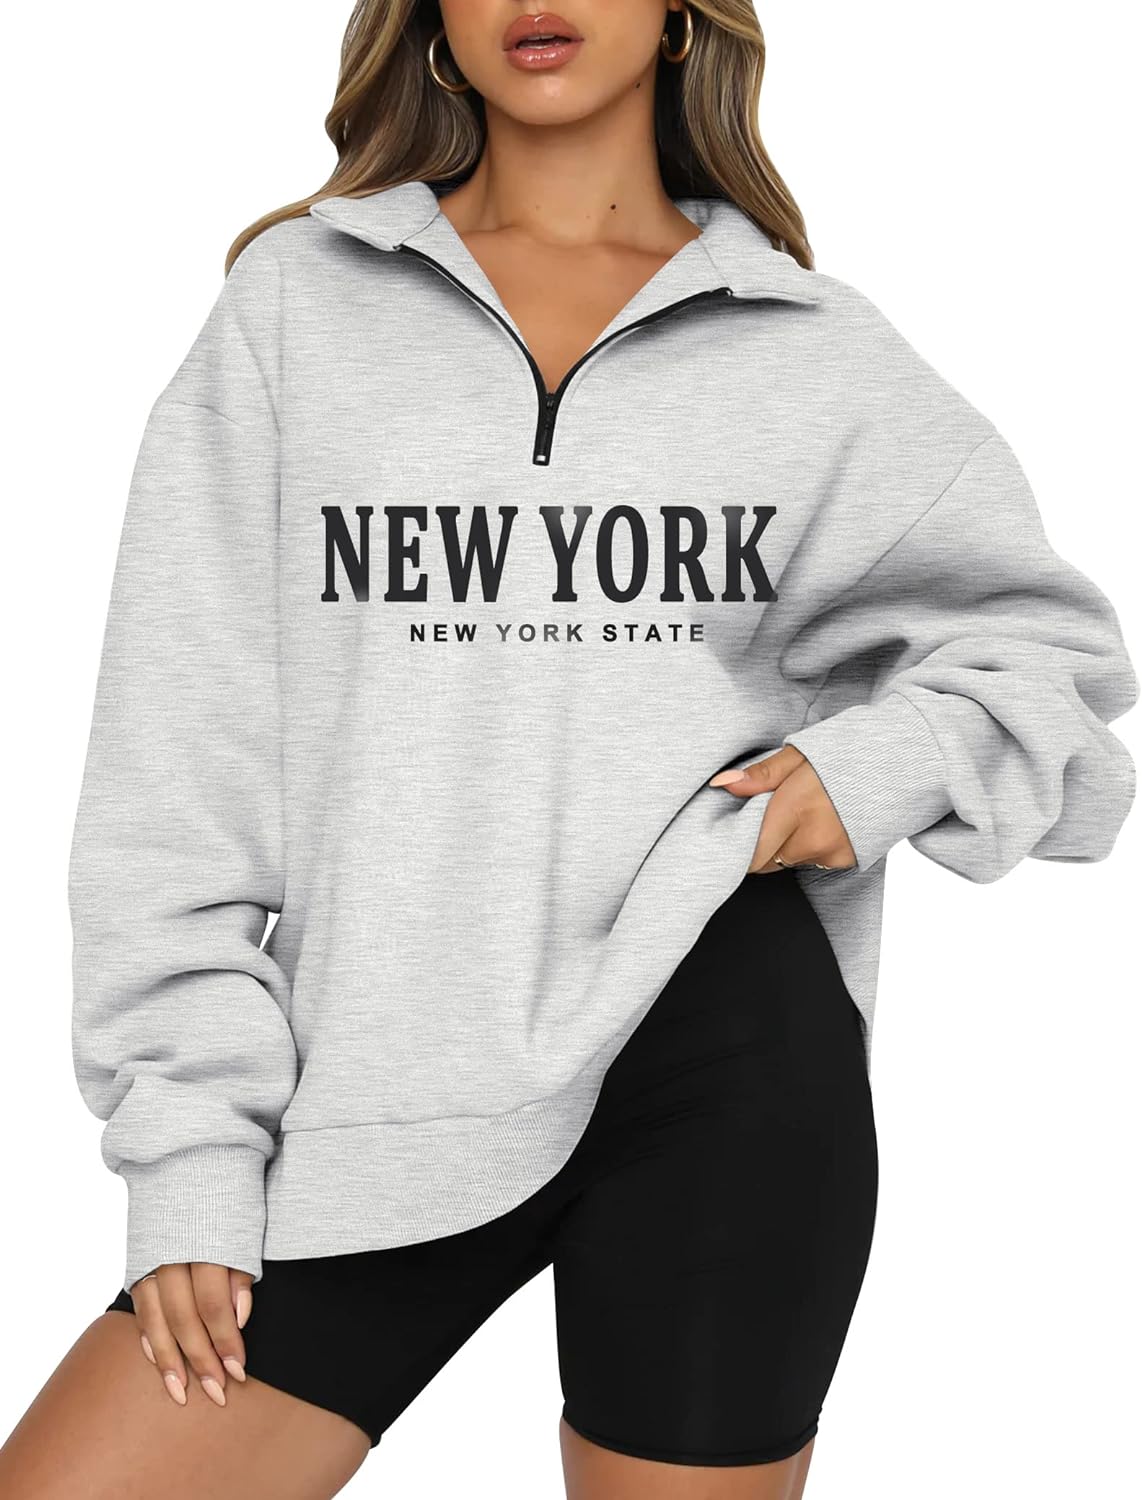 New York Hoodie  Women hoodies sweatshirts, Hoodies womens, Hoody outfits